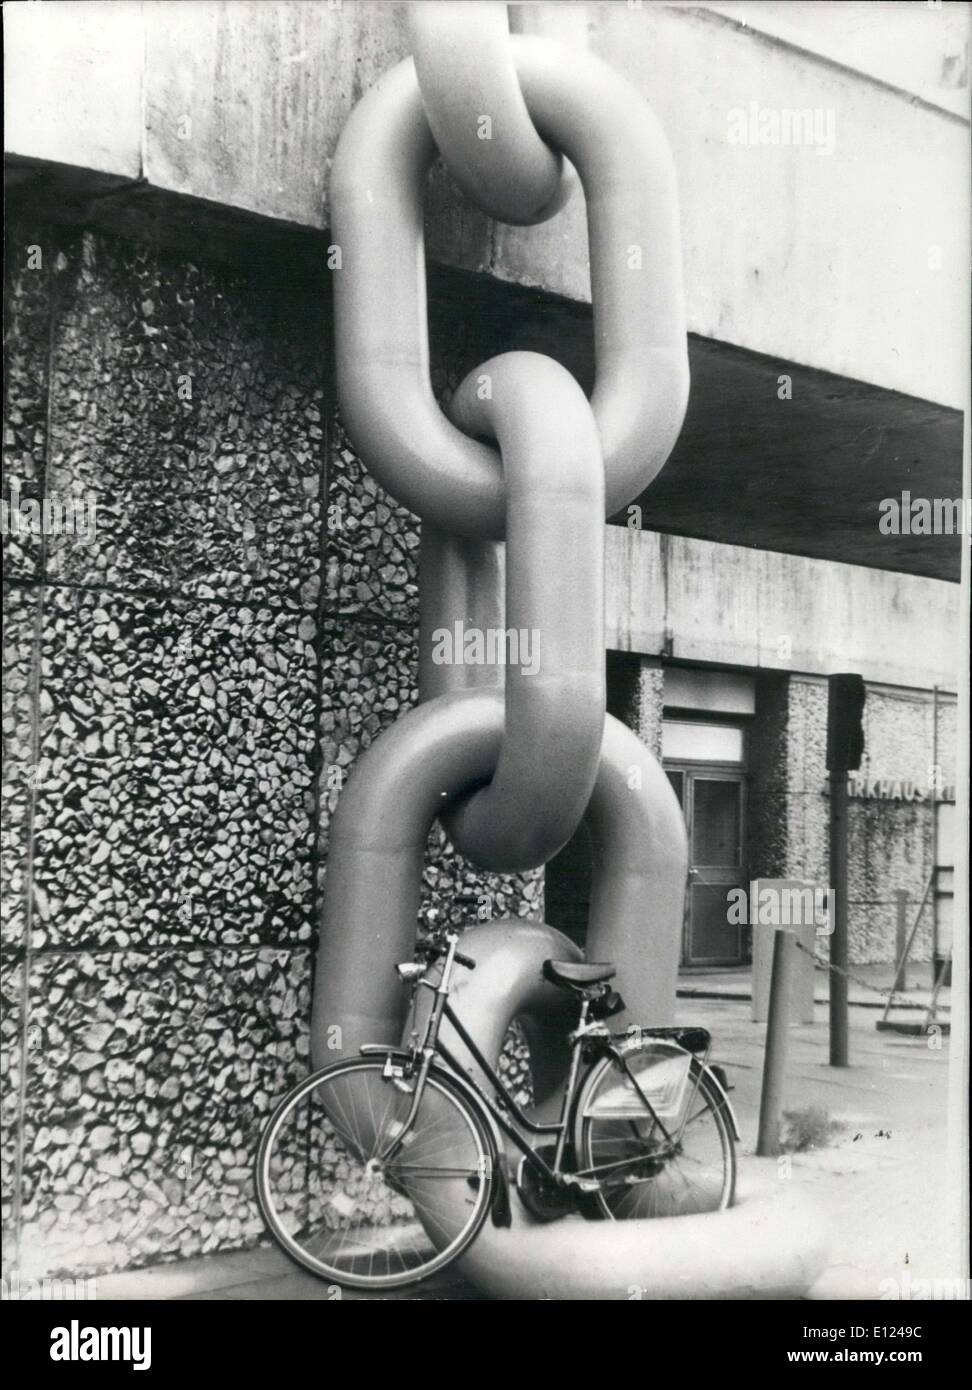 Lug. 25, 1985 - Bicicletta attaccata alla catena gigante per difendersi dai ladri a Monaco di Baviera Foto Stock